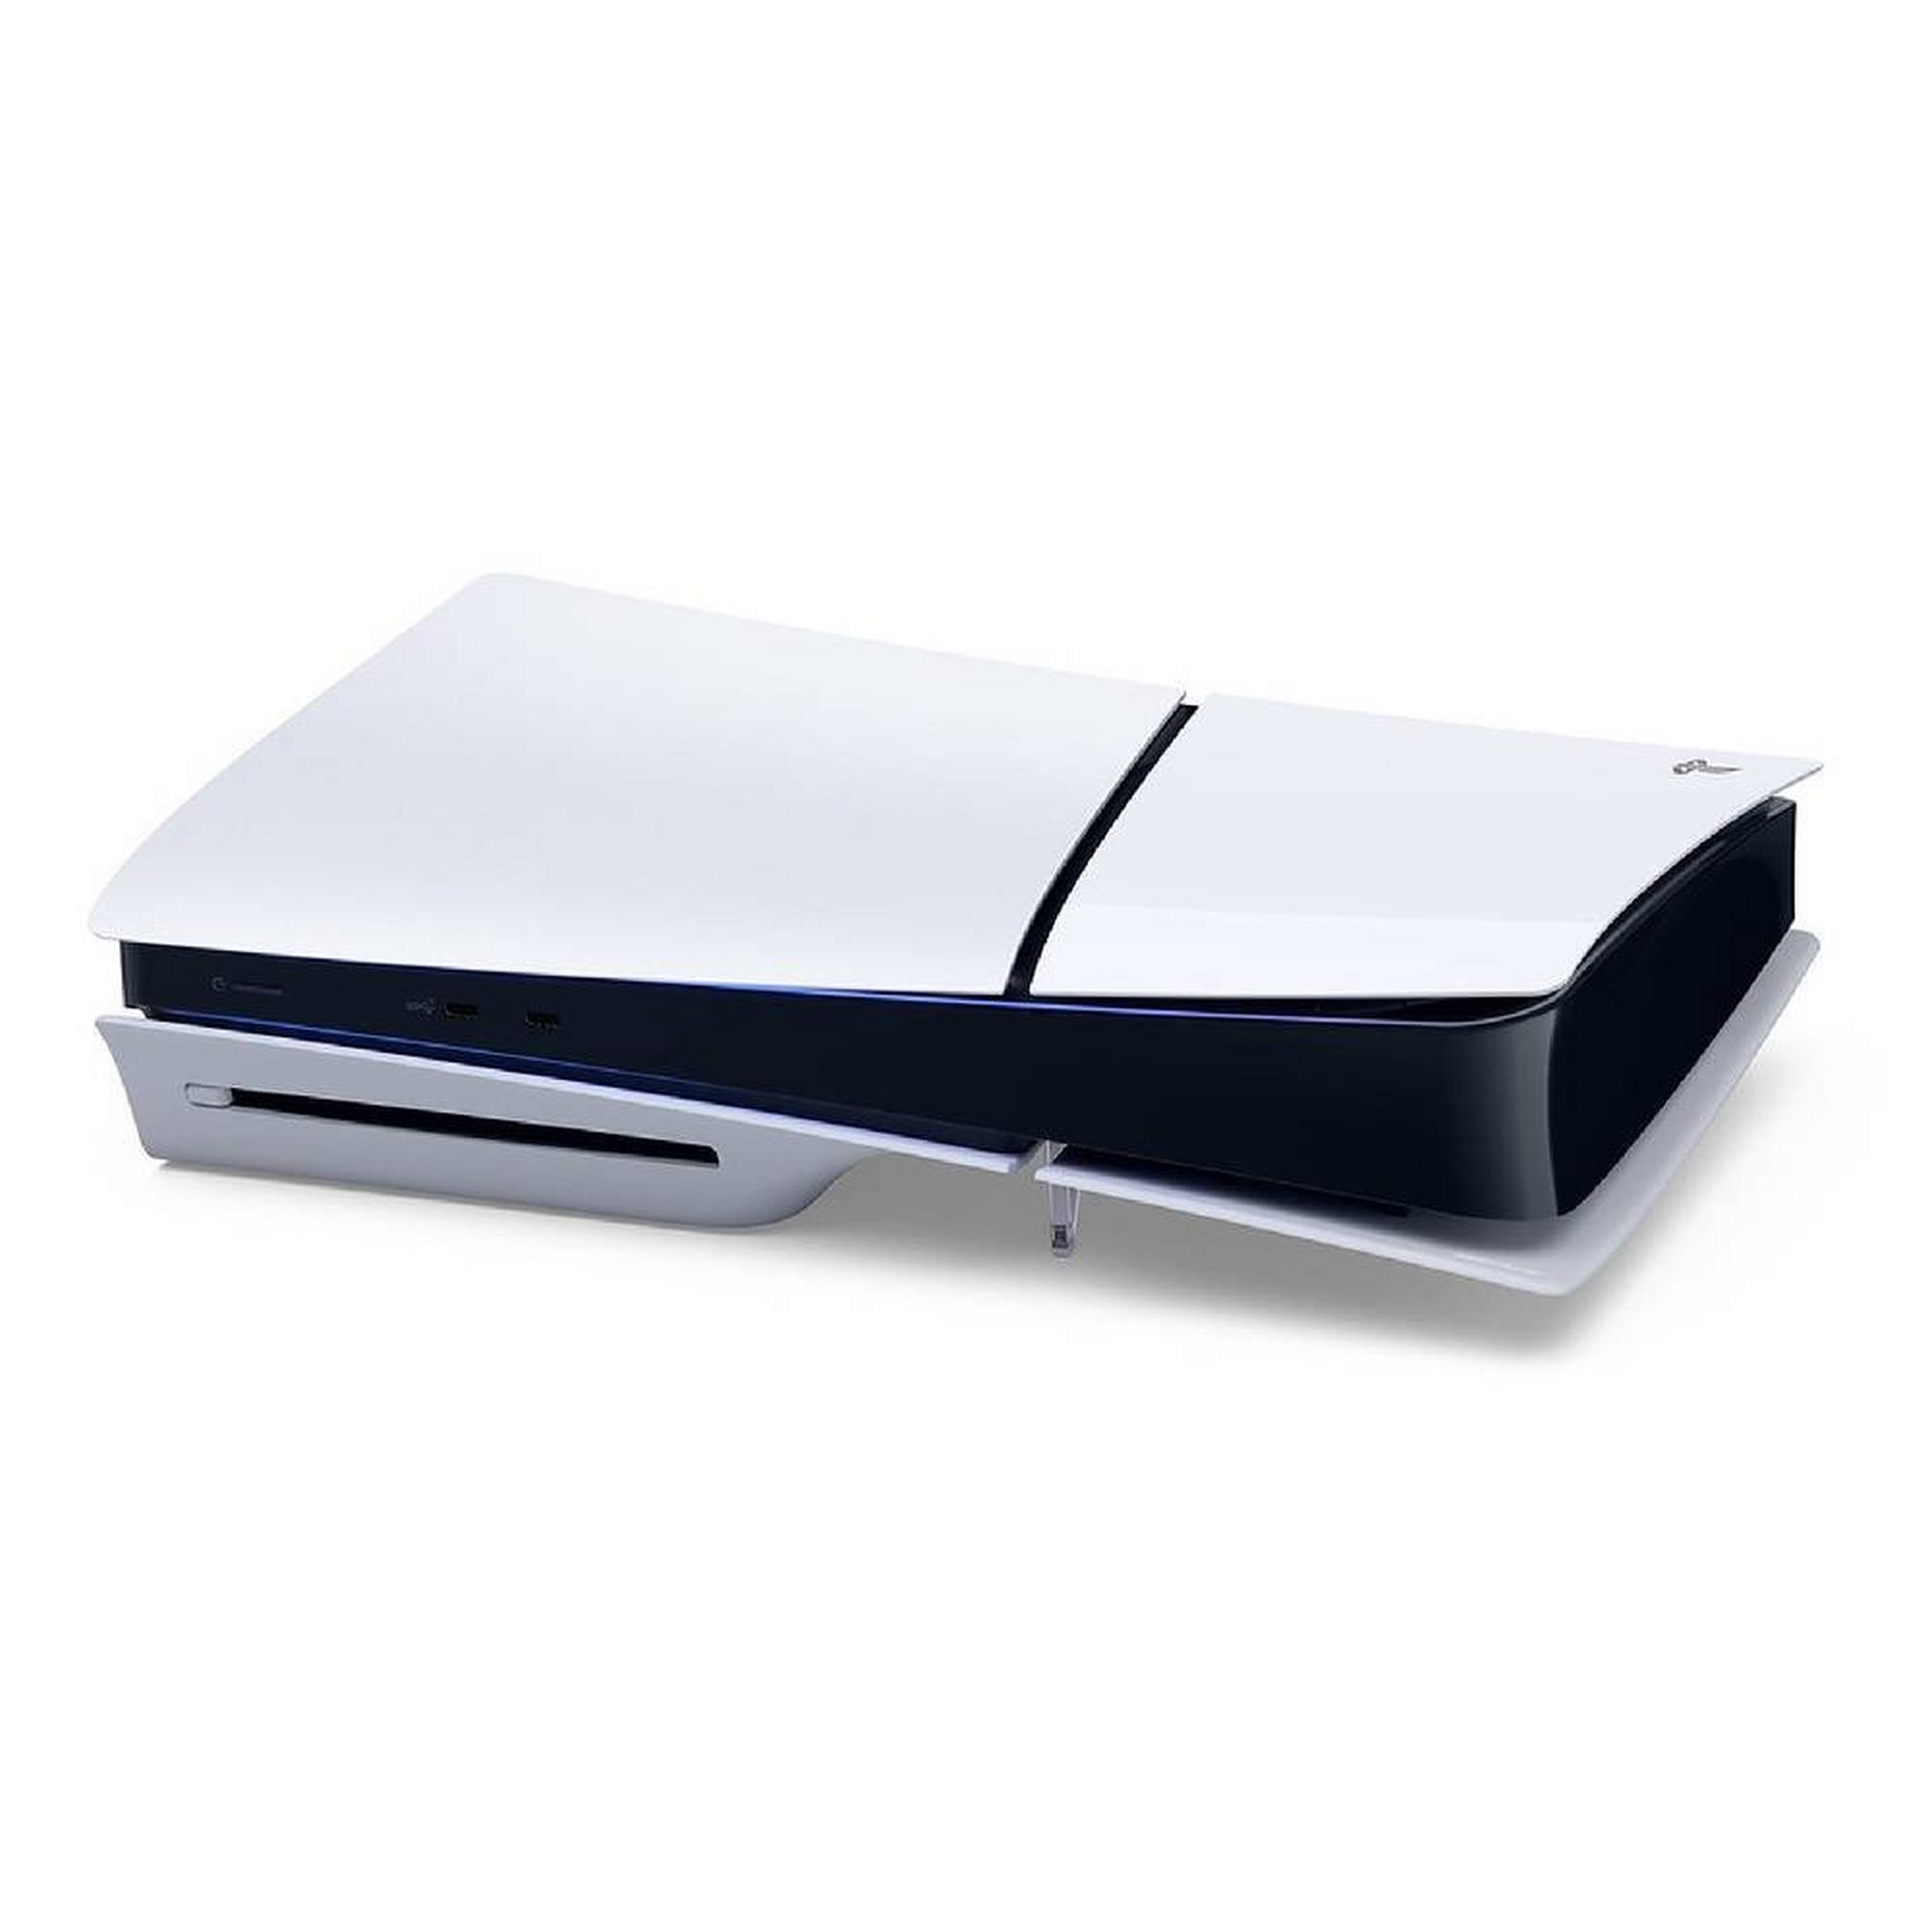 Sony PlayStation 5 Slim - Disc Edition Console, CFI-2016A01Y – White